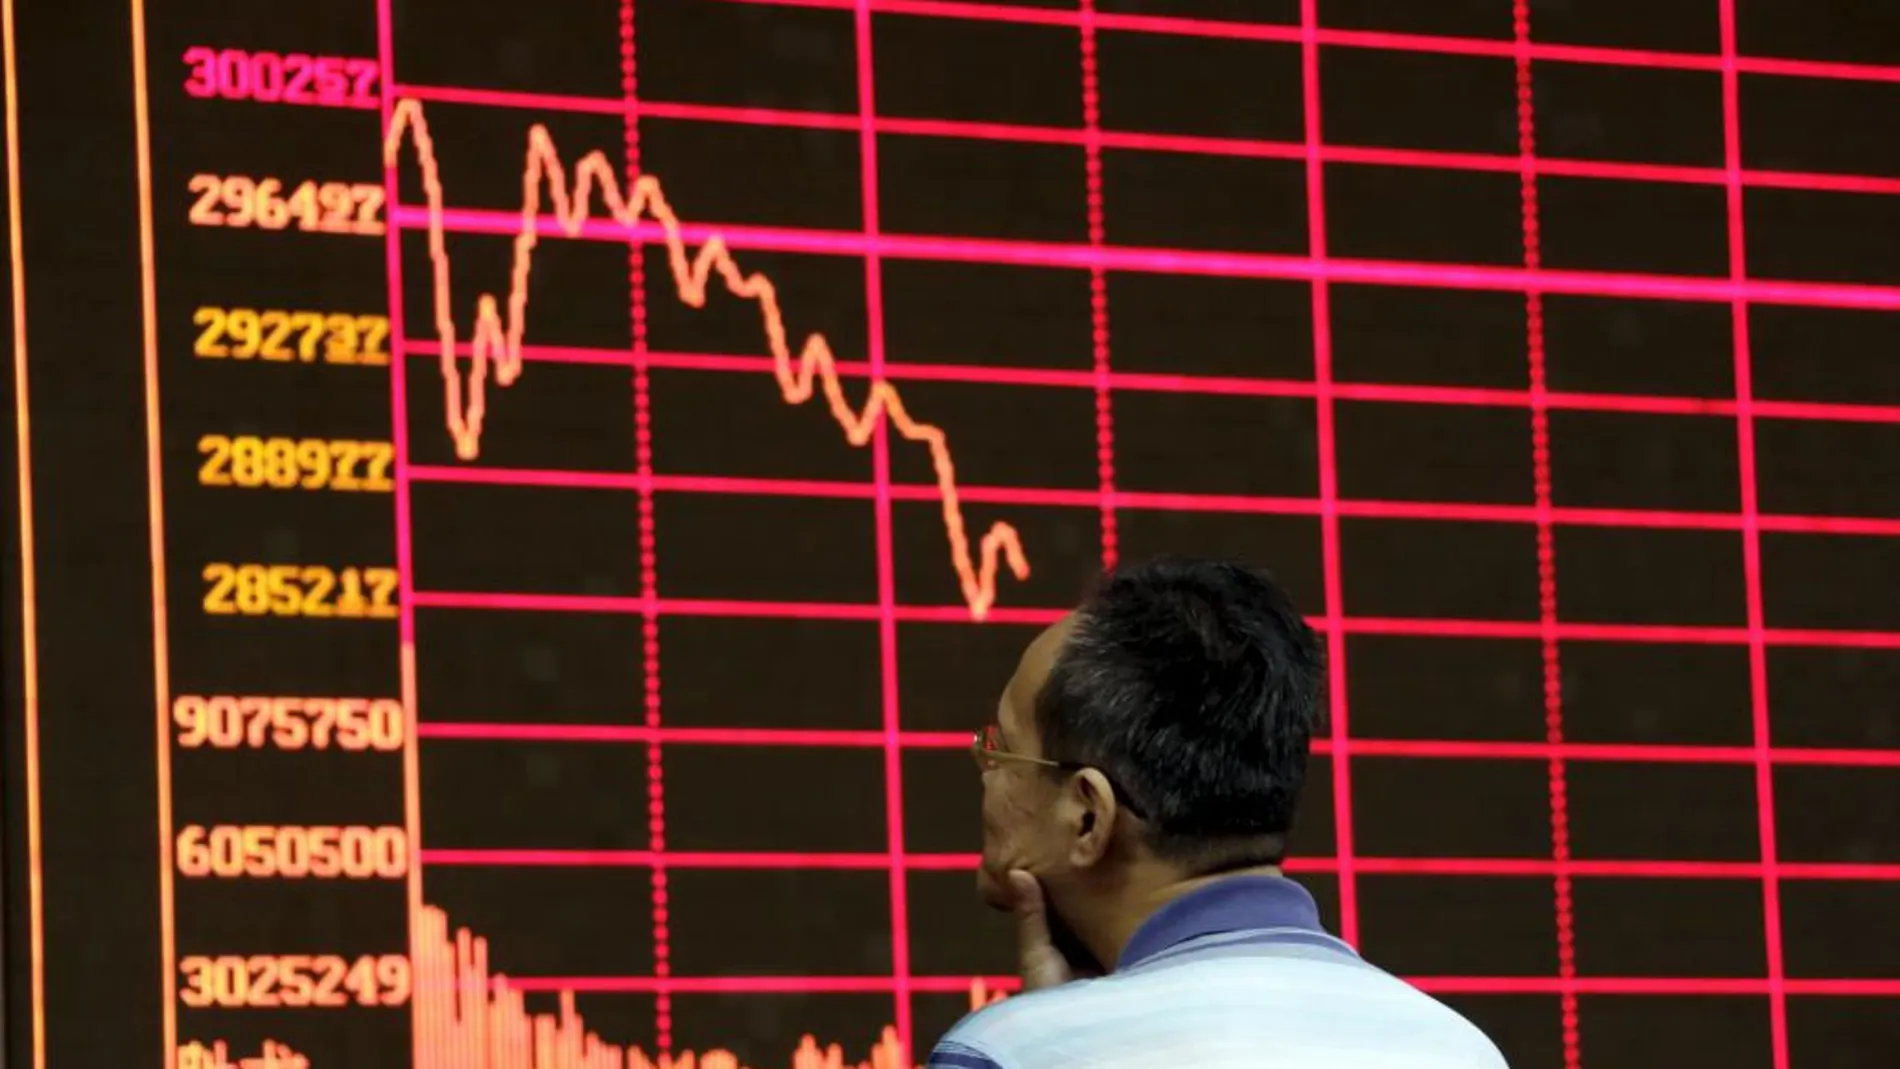 Un inversor analiza uno de los panales informativos de la Bolsa de Shanghai